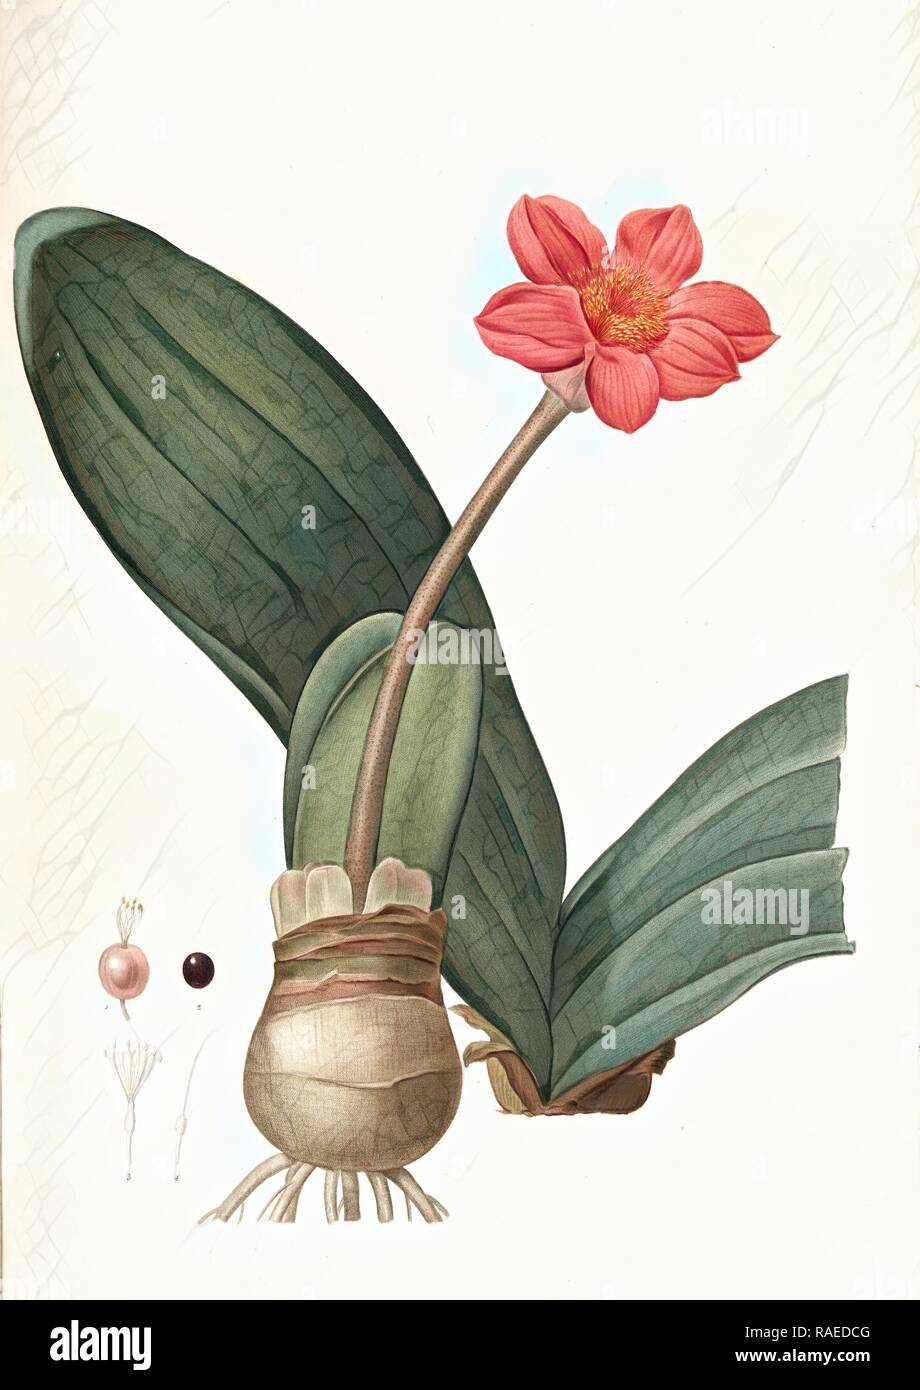 Haemanthus coccineus, Hémanthe écarlate, Blood Lily, Paint Brush, April Fool, Redouté, Pierre Joseph, 1759-1840, les reimagined Stock Photo